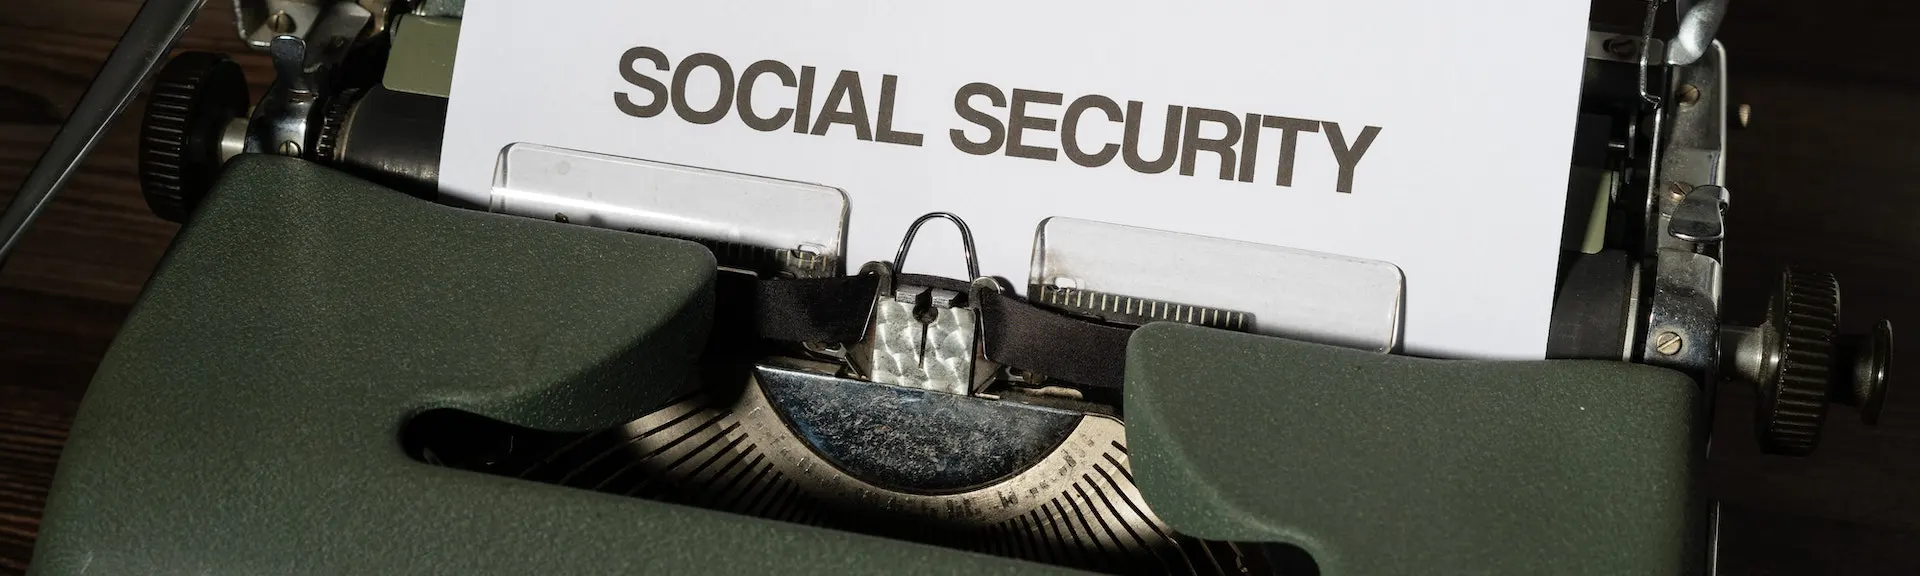 social security written on typewriter